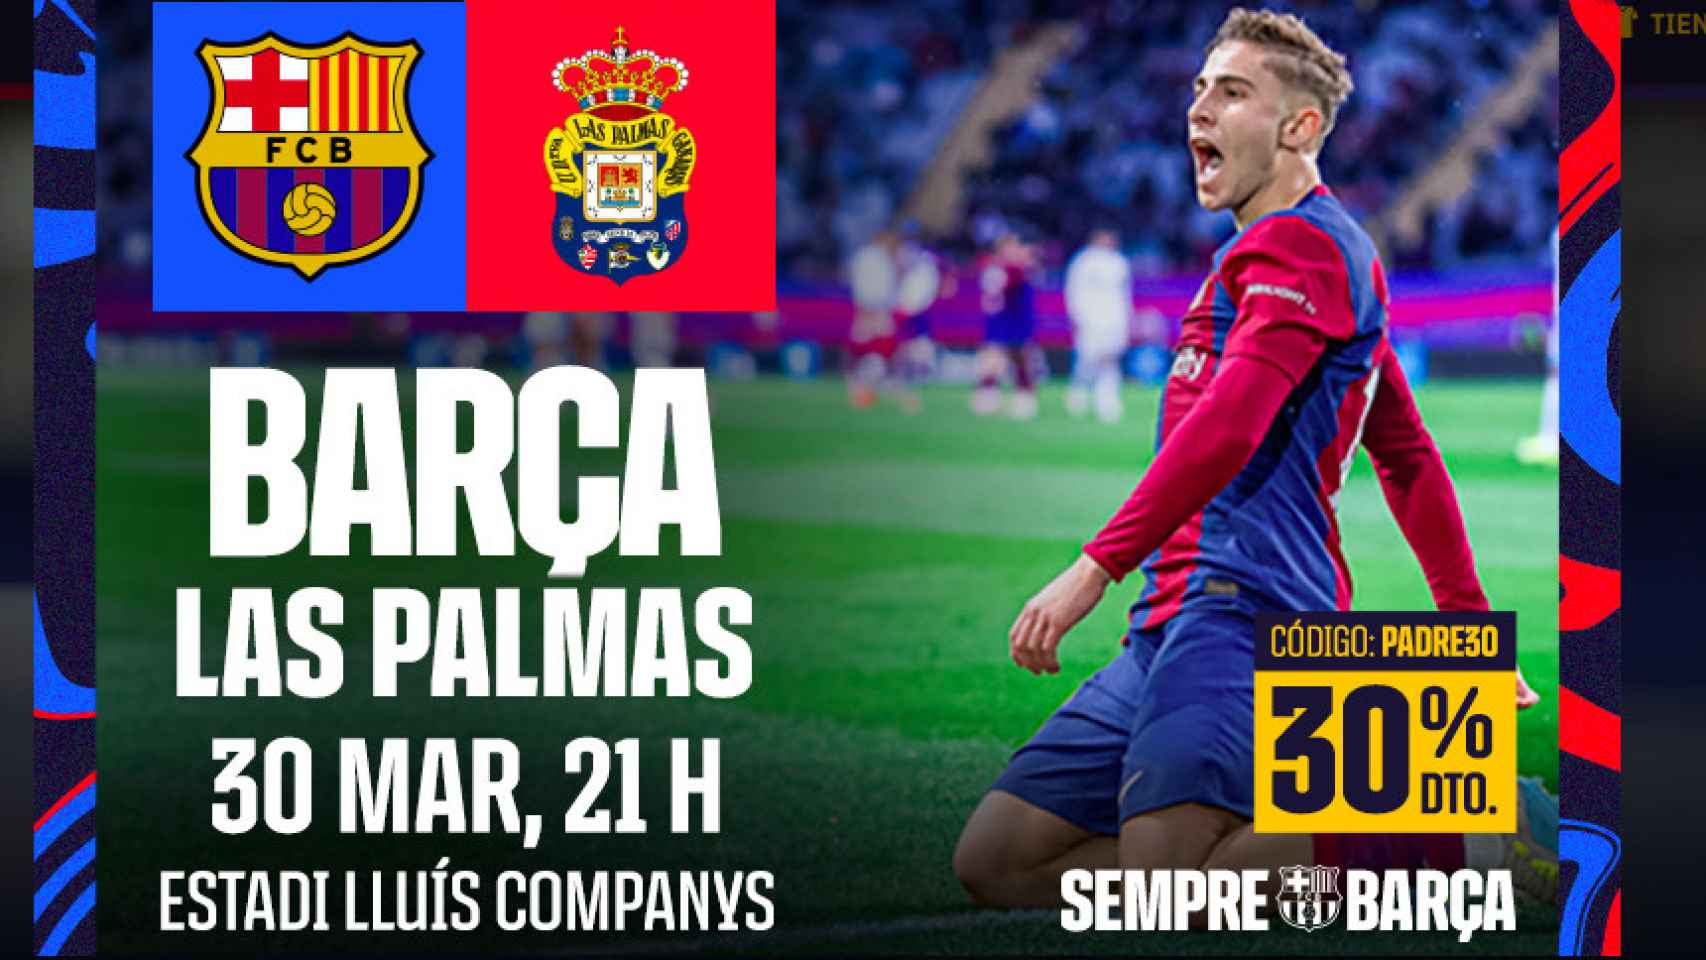 Promoción del Barça con vistas al partido ante Las Palmas